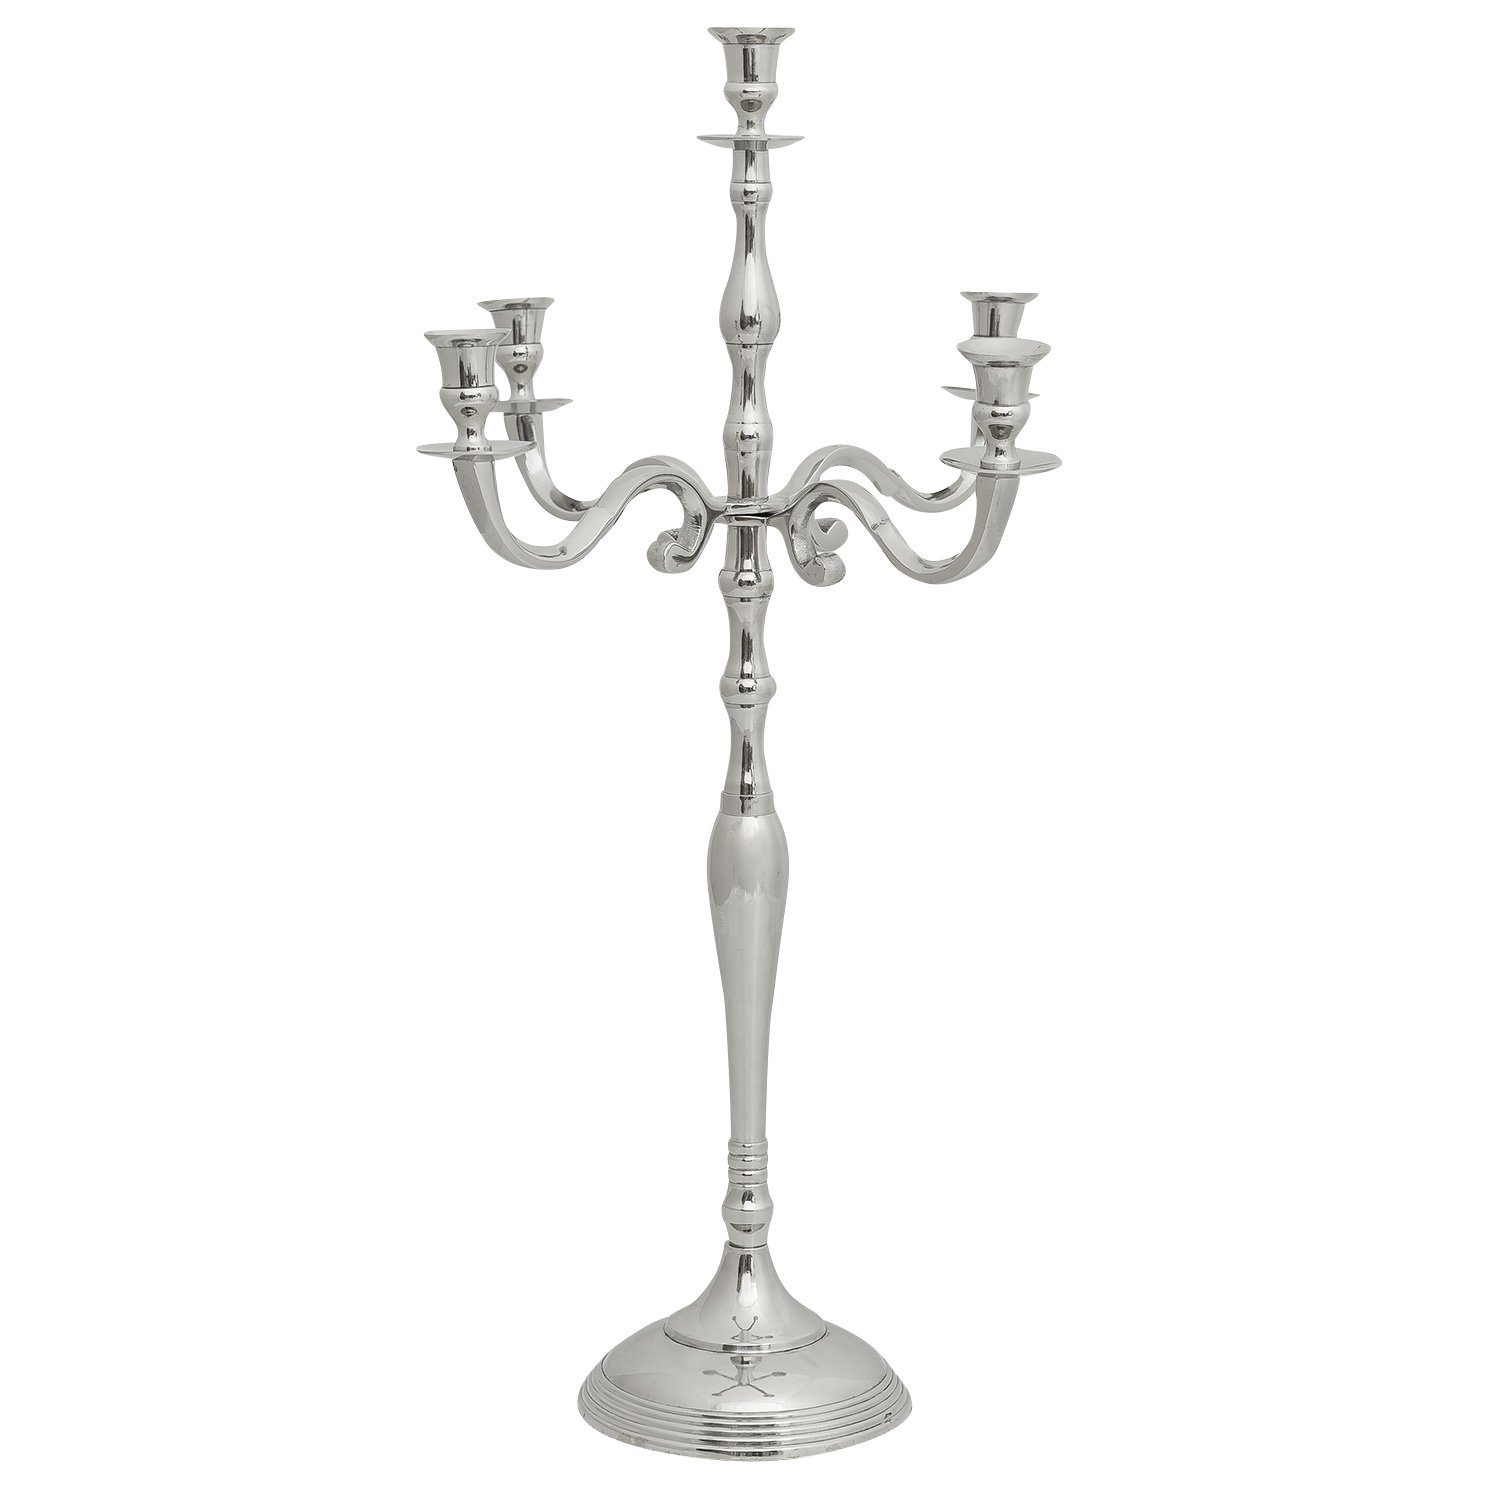 Aubaho 5-armig Aluminium silber 78cm Kerzenständer Kerzenhalter Kerzenständer Antik-Stil